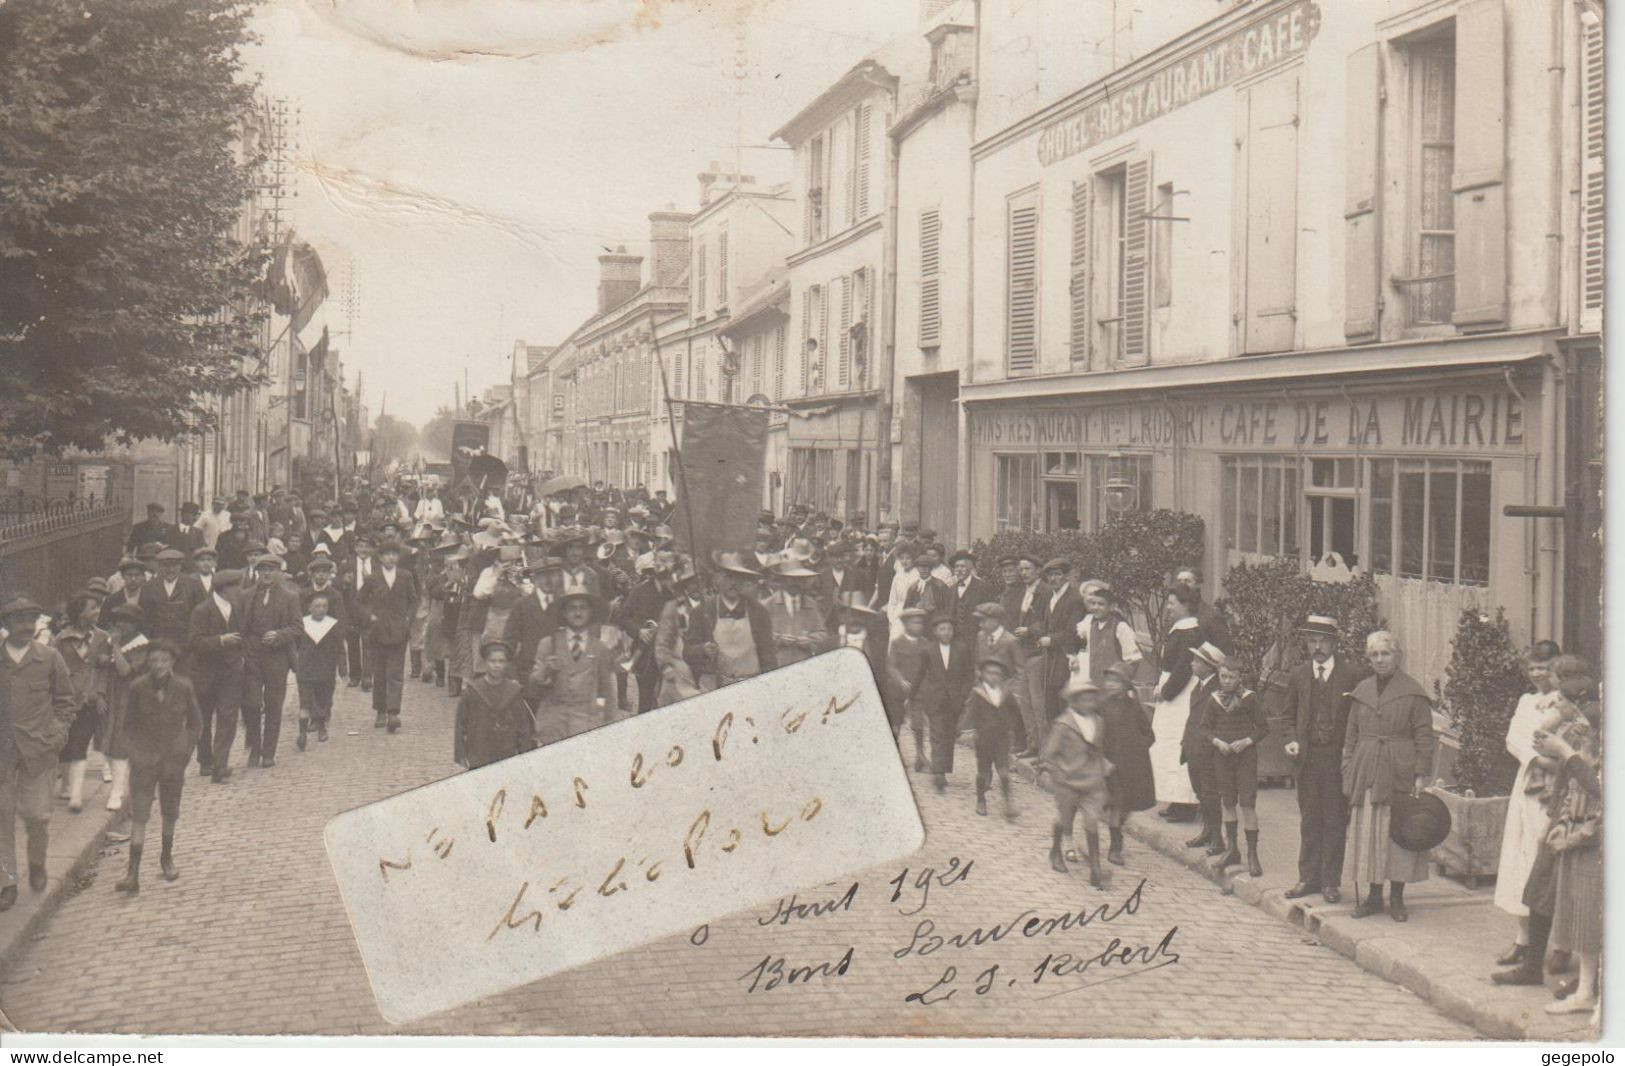 RIS ORANGIS  - Souvenir De La Fête Du 8 Août 1921 De La Foule  Qui Passe Devant Le Café De La Mairie ( Carte Photo ) - Ris Orangis